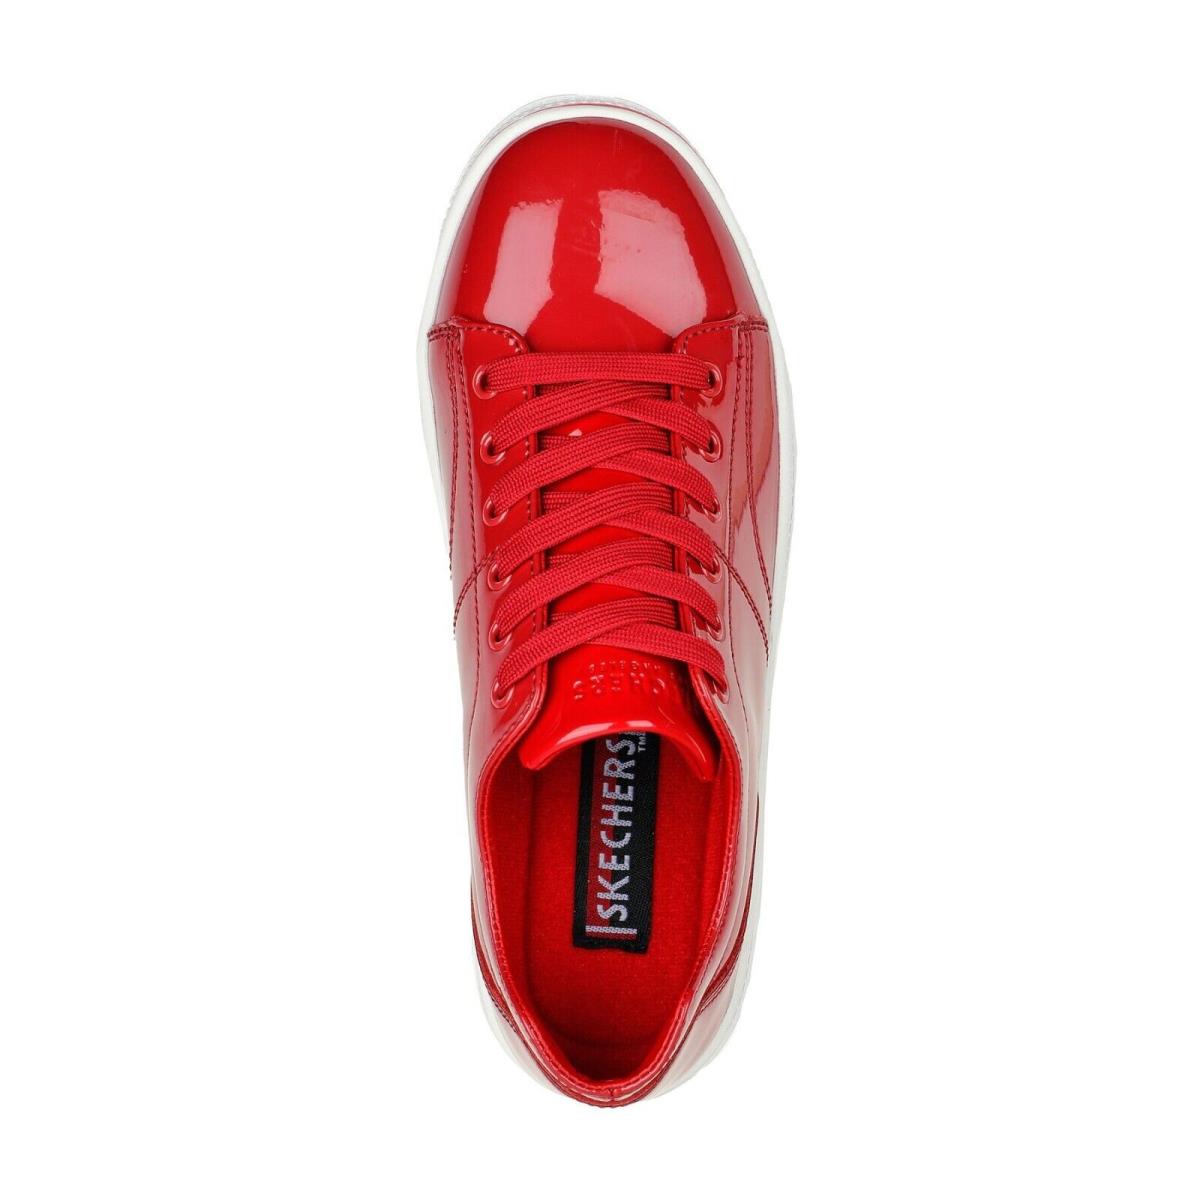 Skechers shoes Roadies - Red 7